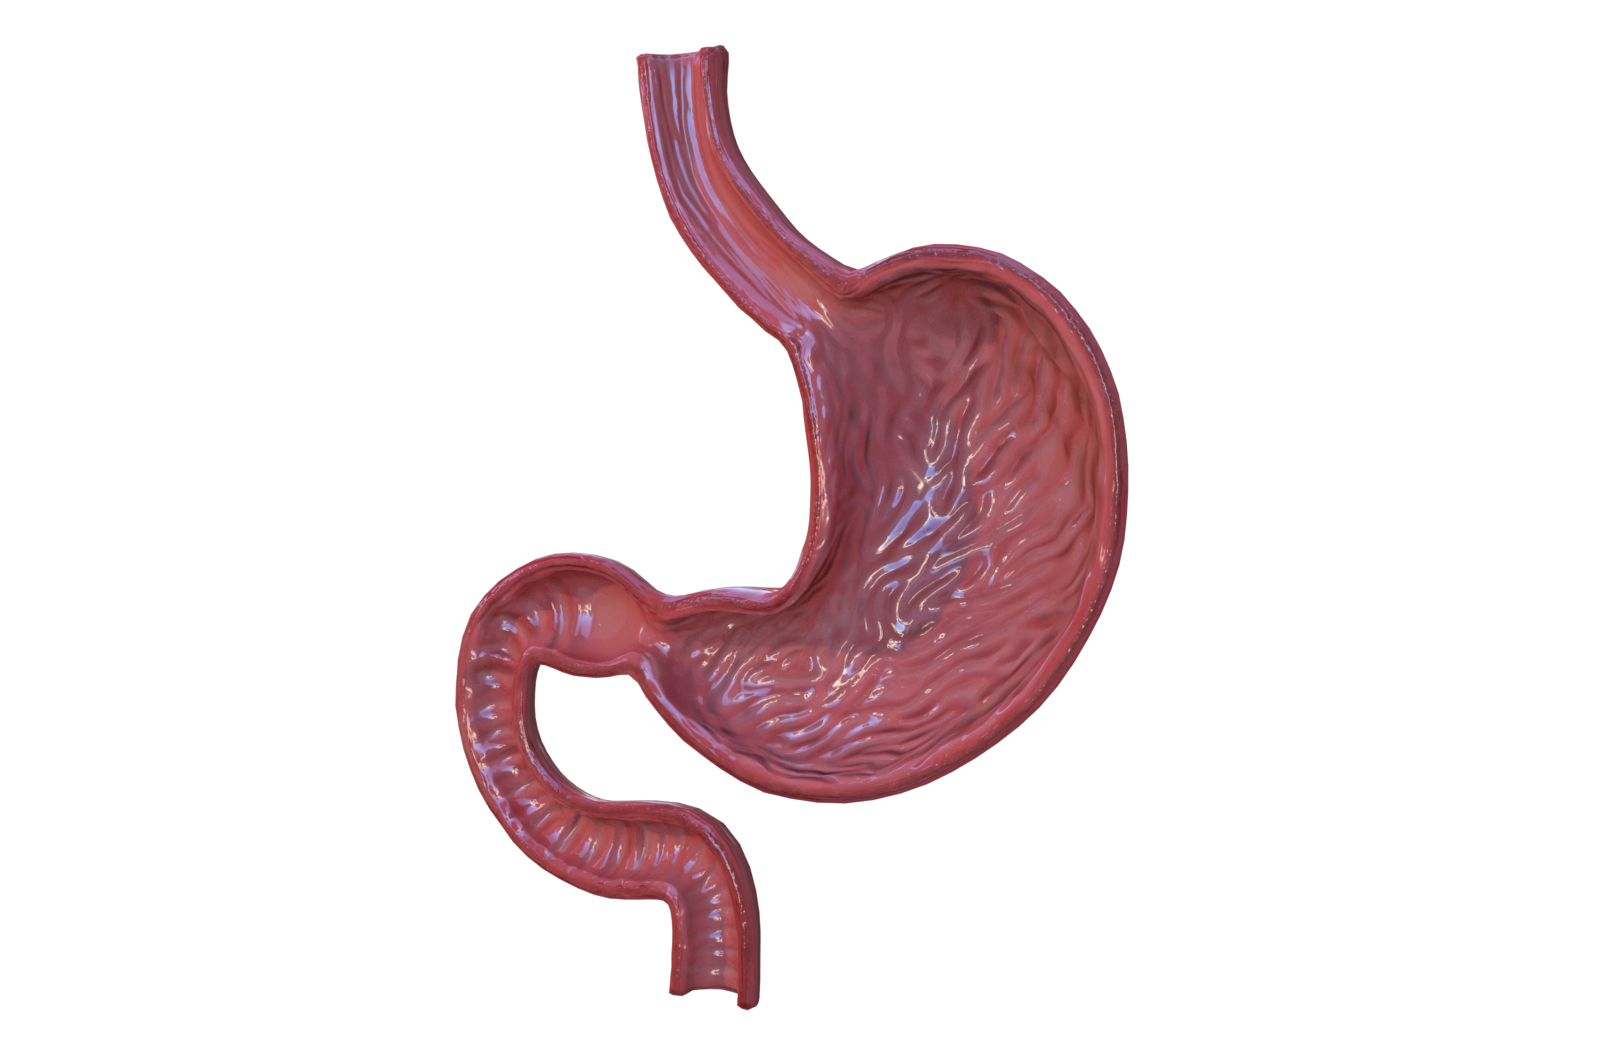 胃部 人体器官 医学解剖模型 3D三维模型 3Dmax MAYA模型 FBX模型